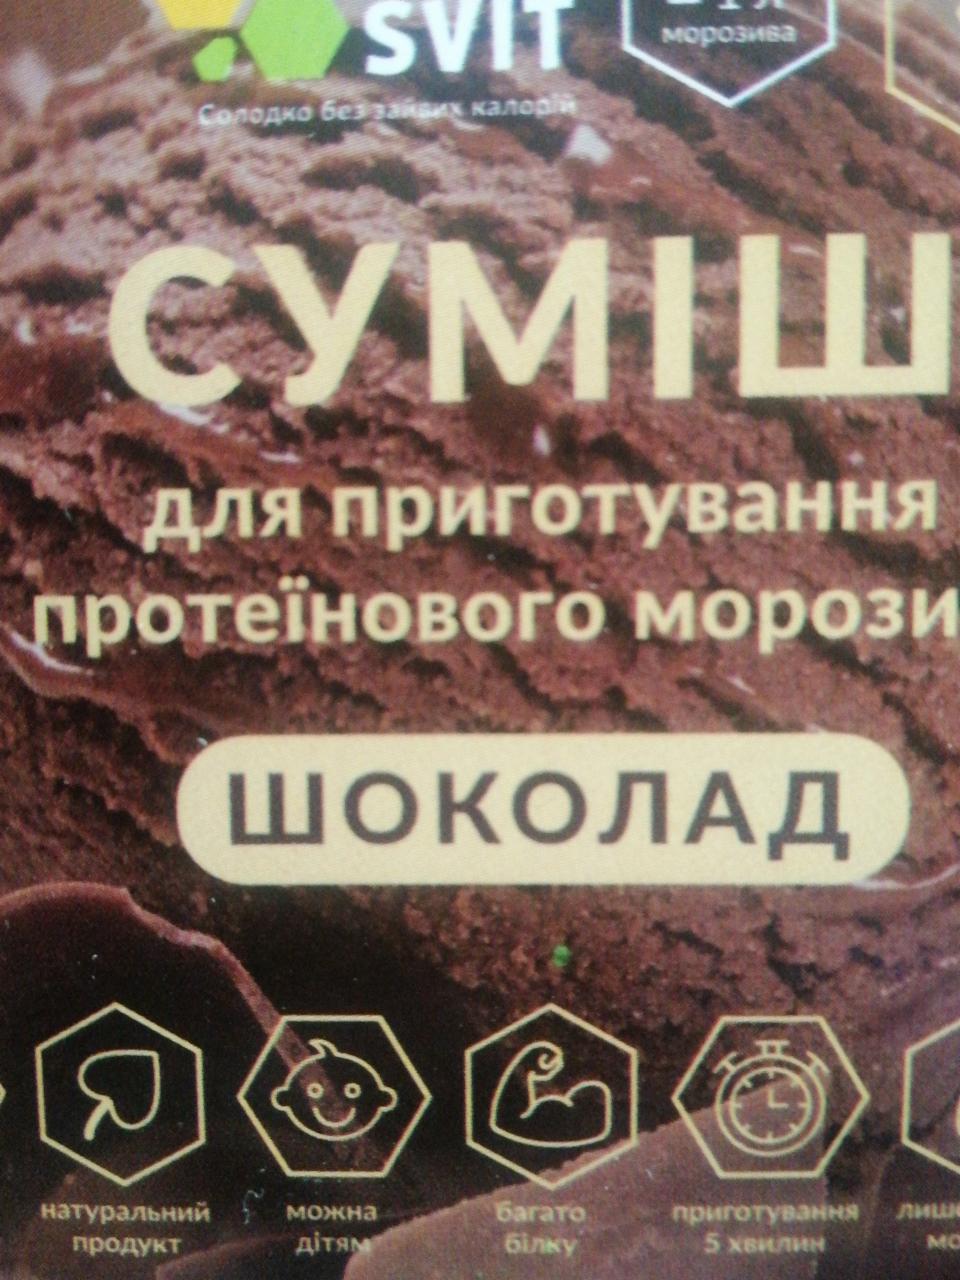 Фото - смесь для приготовления протеинового мороженого шоколад Solo Svit